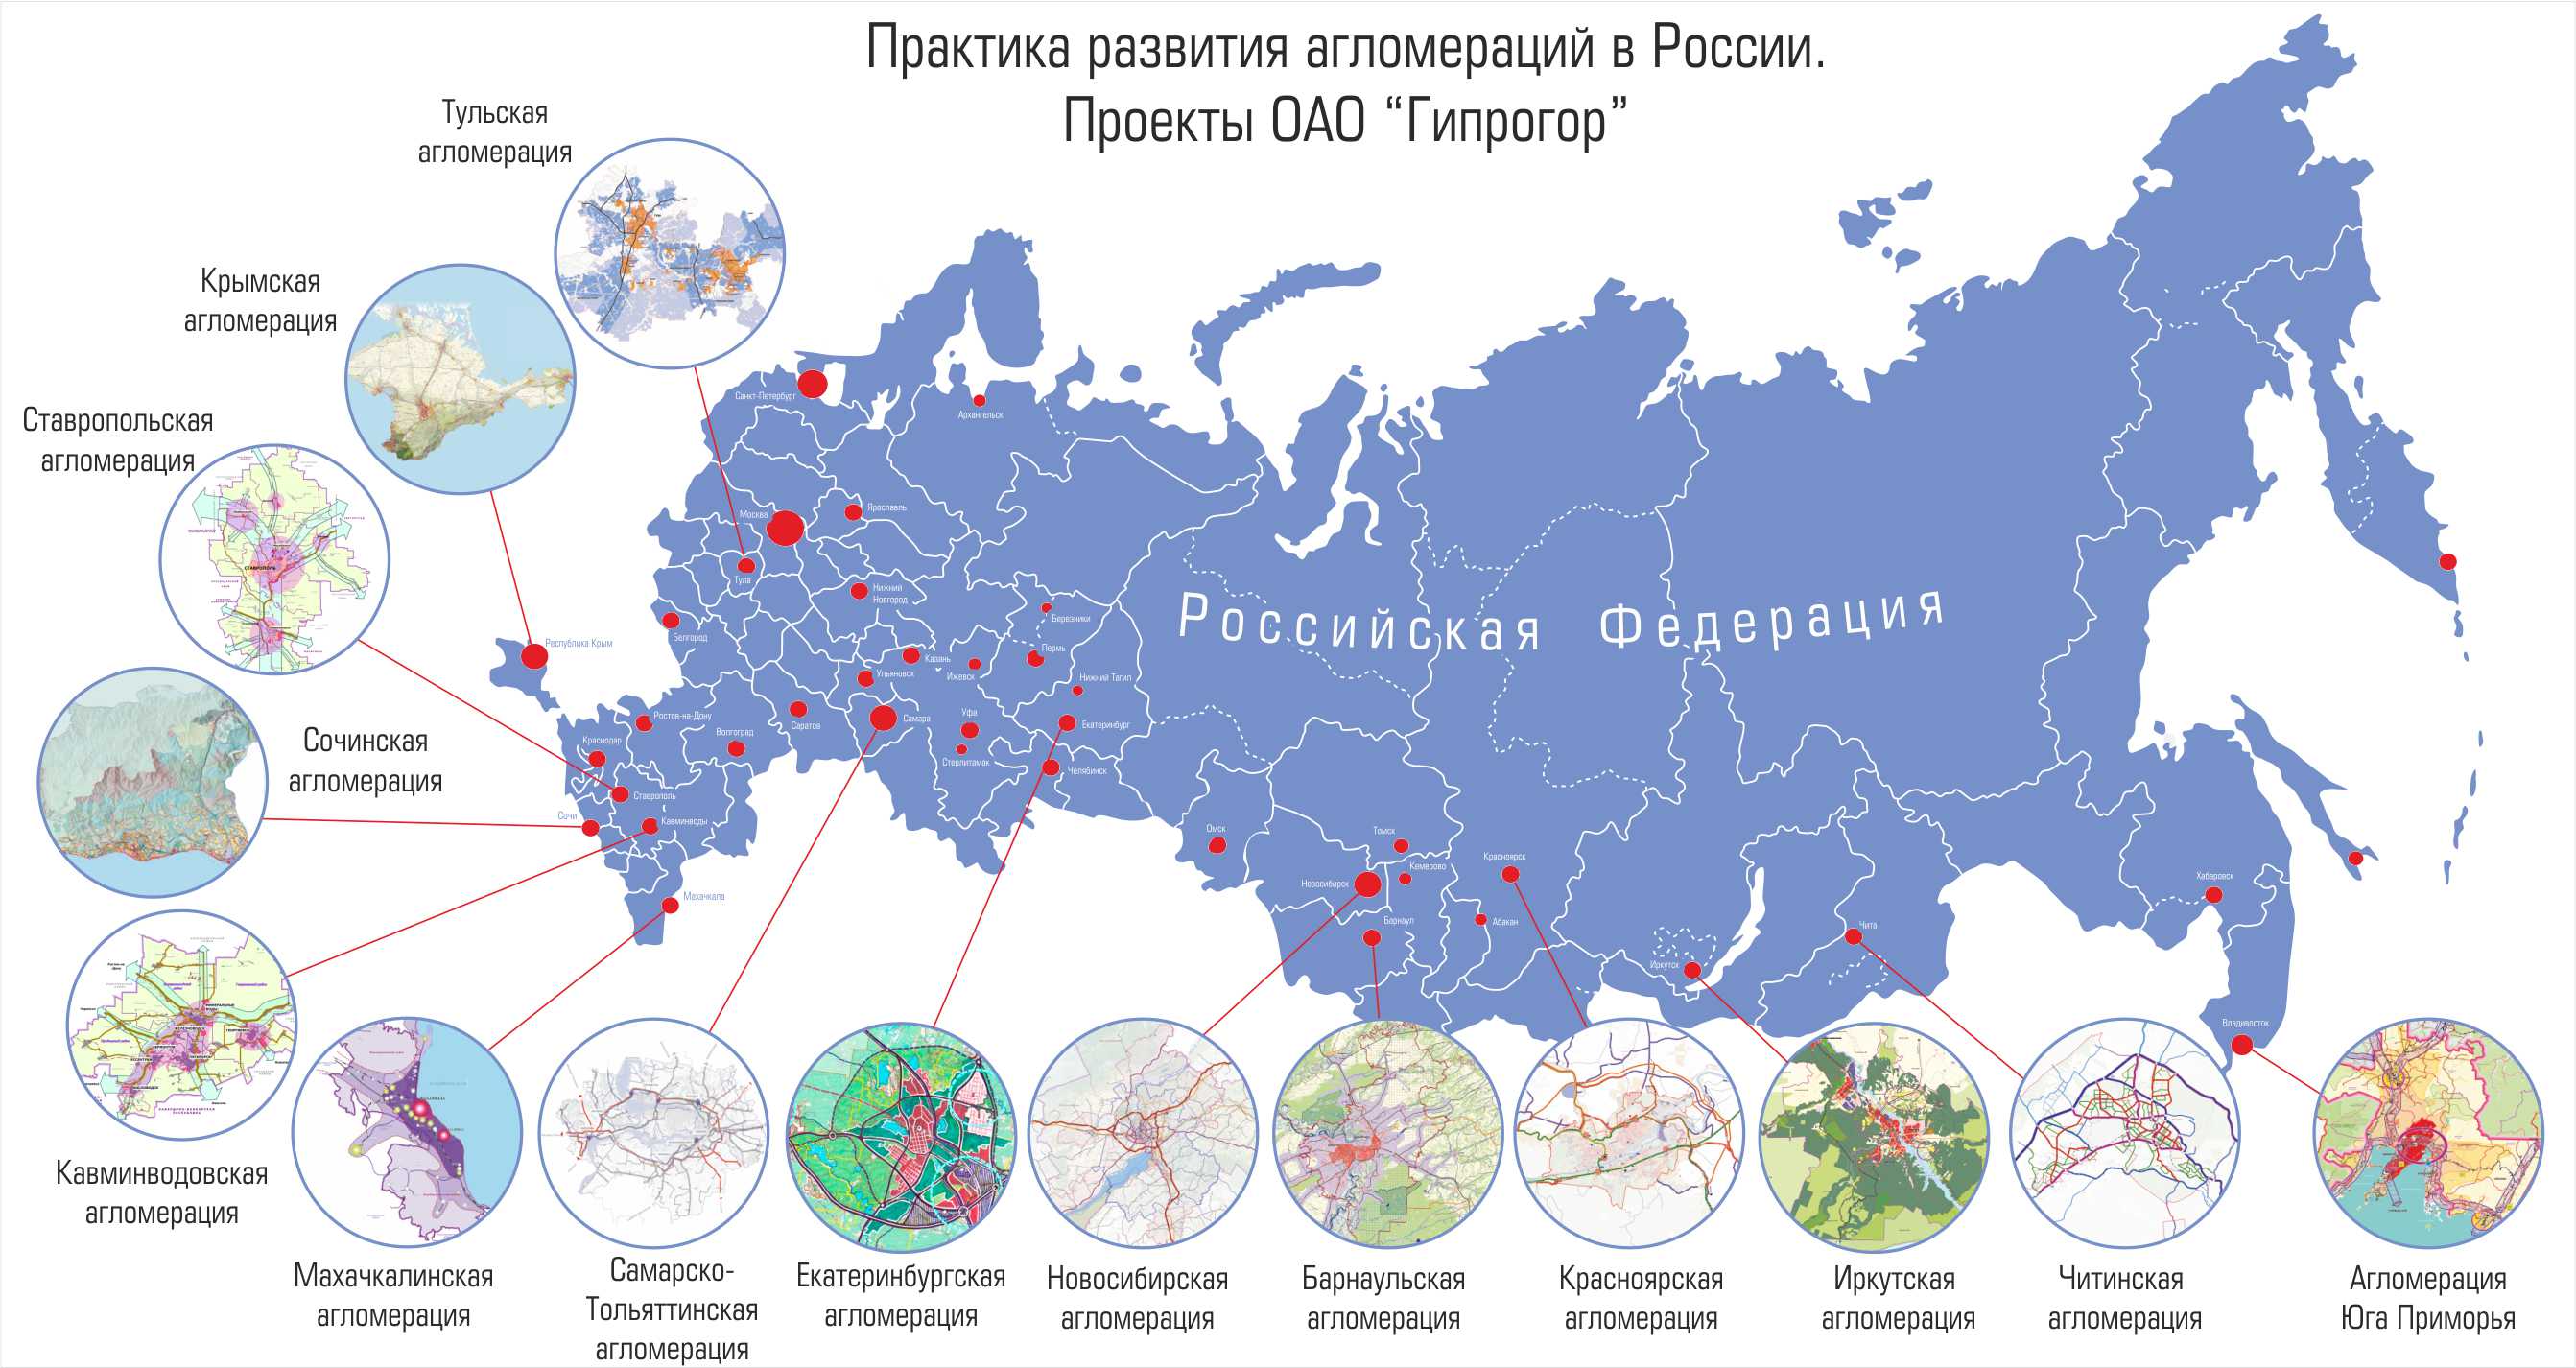 Крупнейшие города и агломерации россии